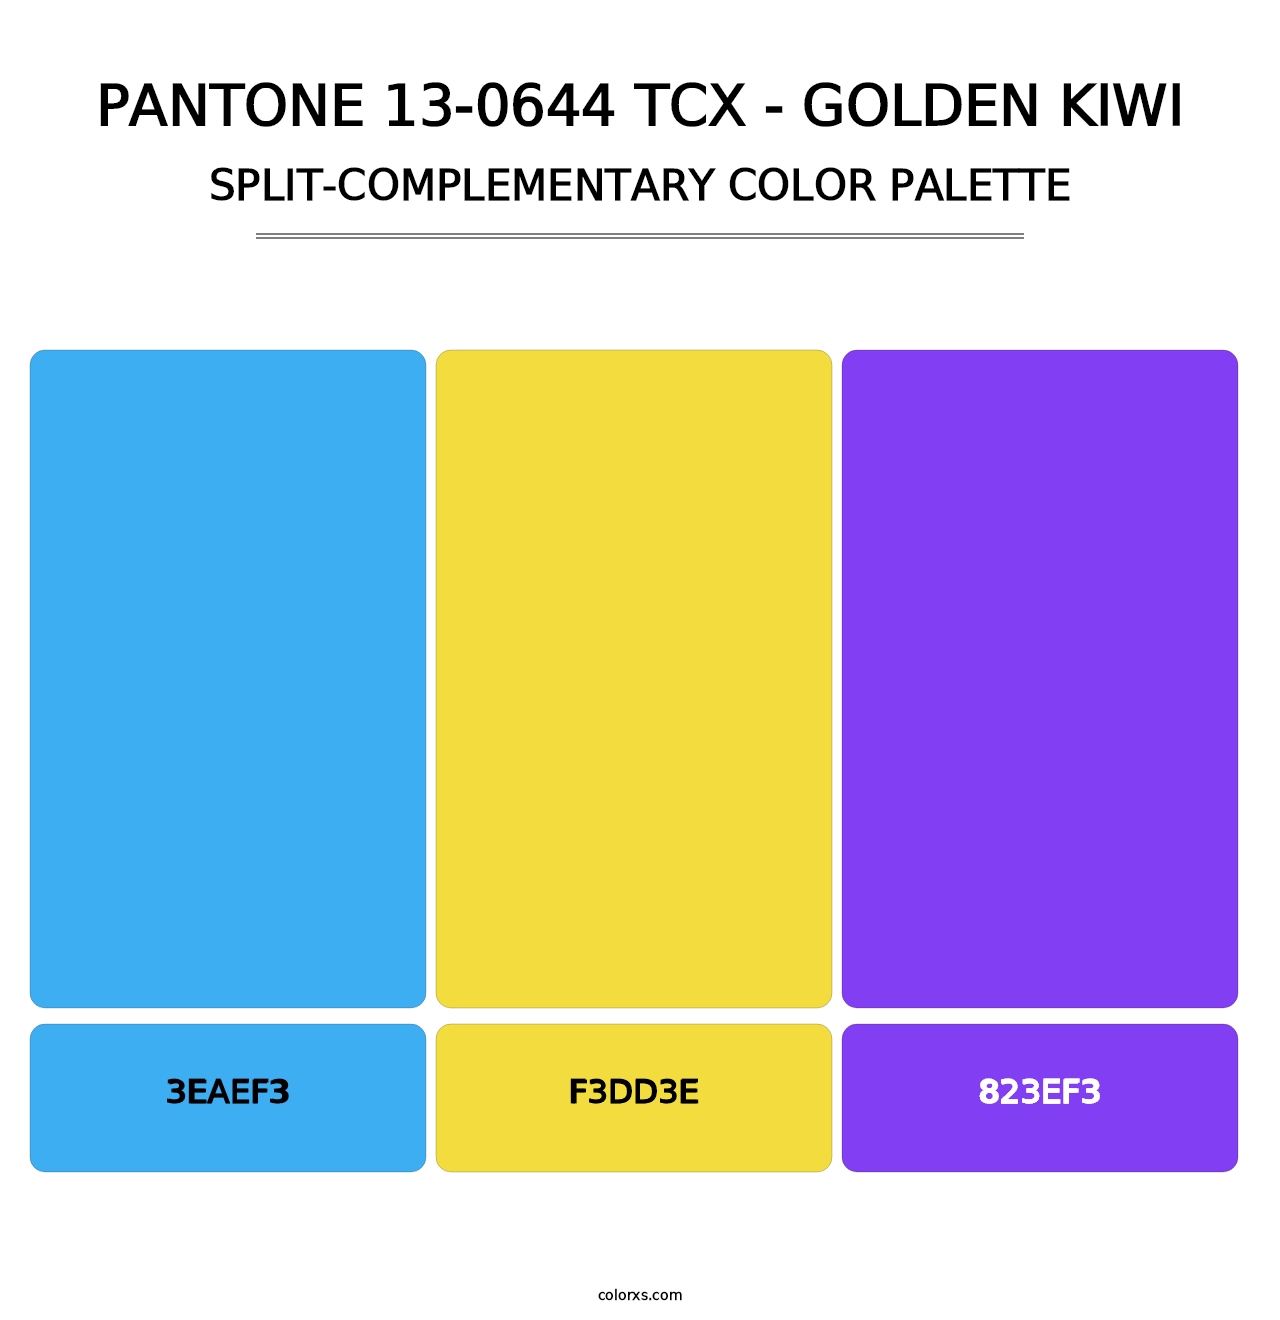 PANTONE 13-0644 TCX - Golden Kiwi - Split-Complementary Color Palette